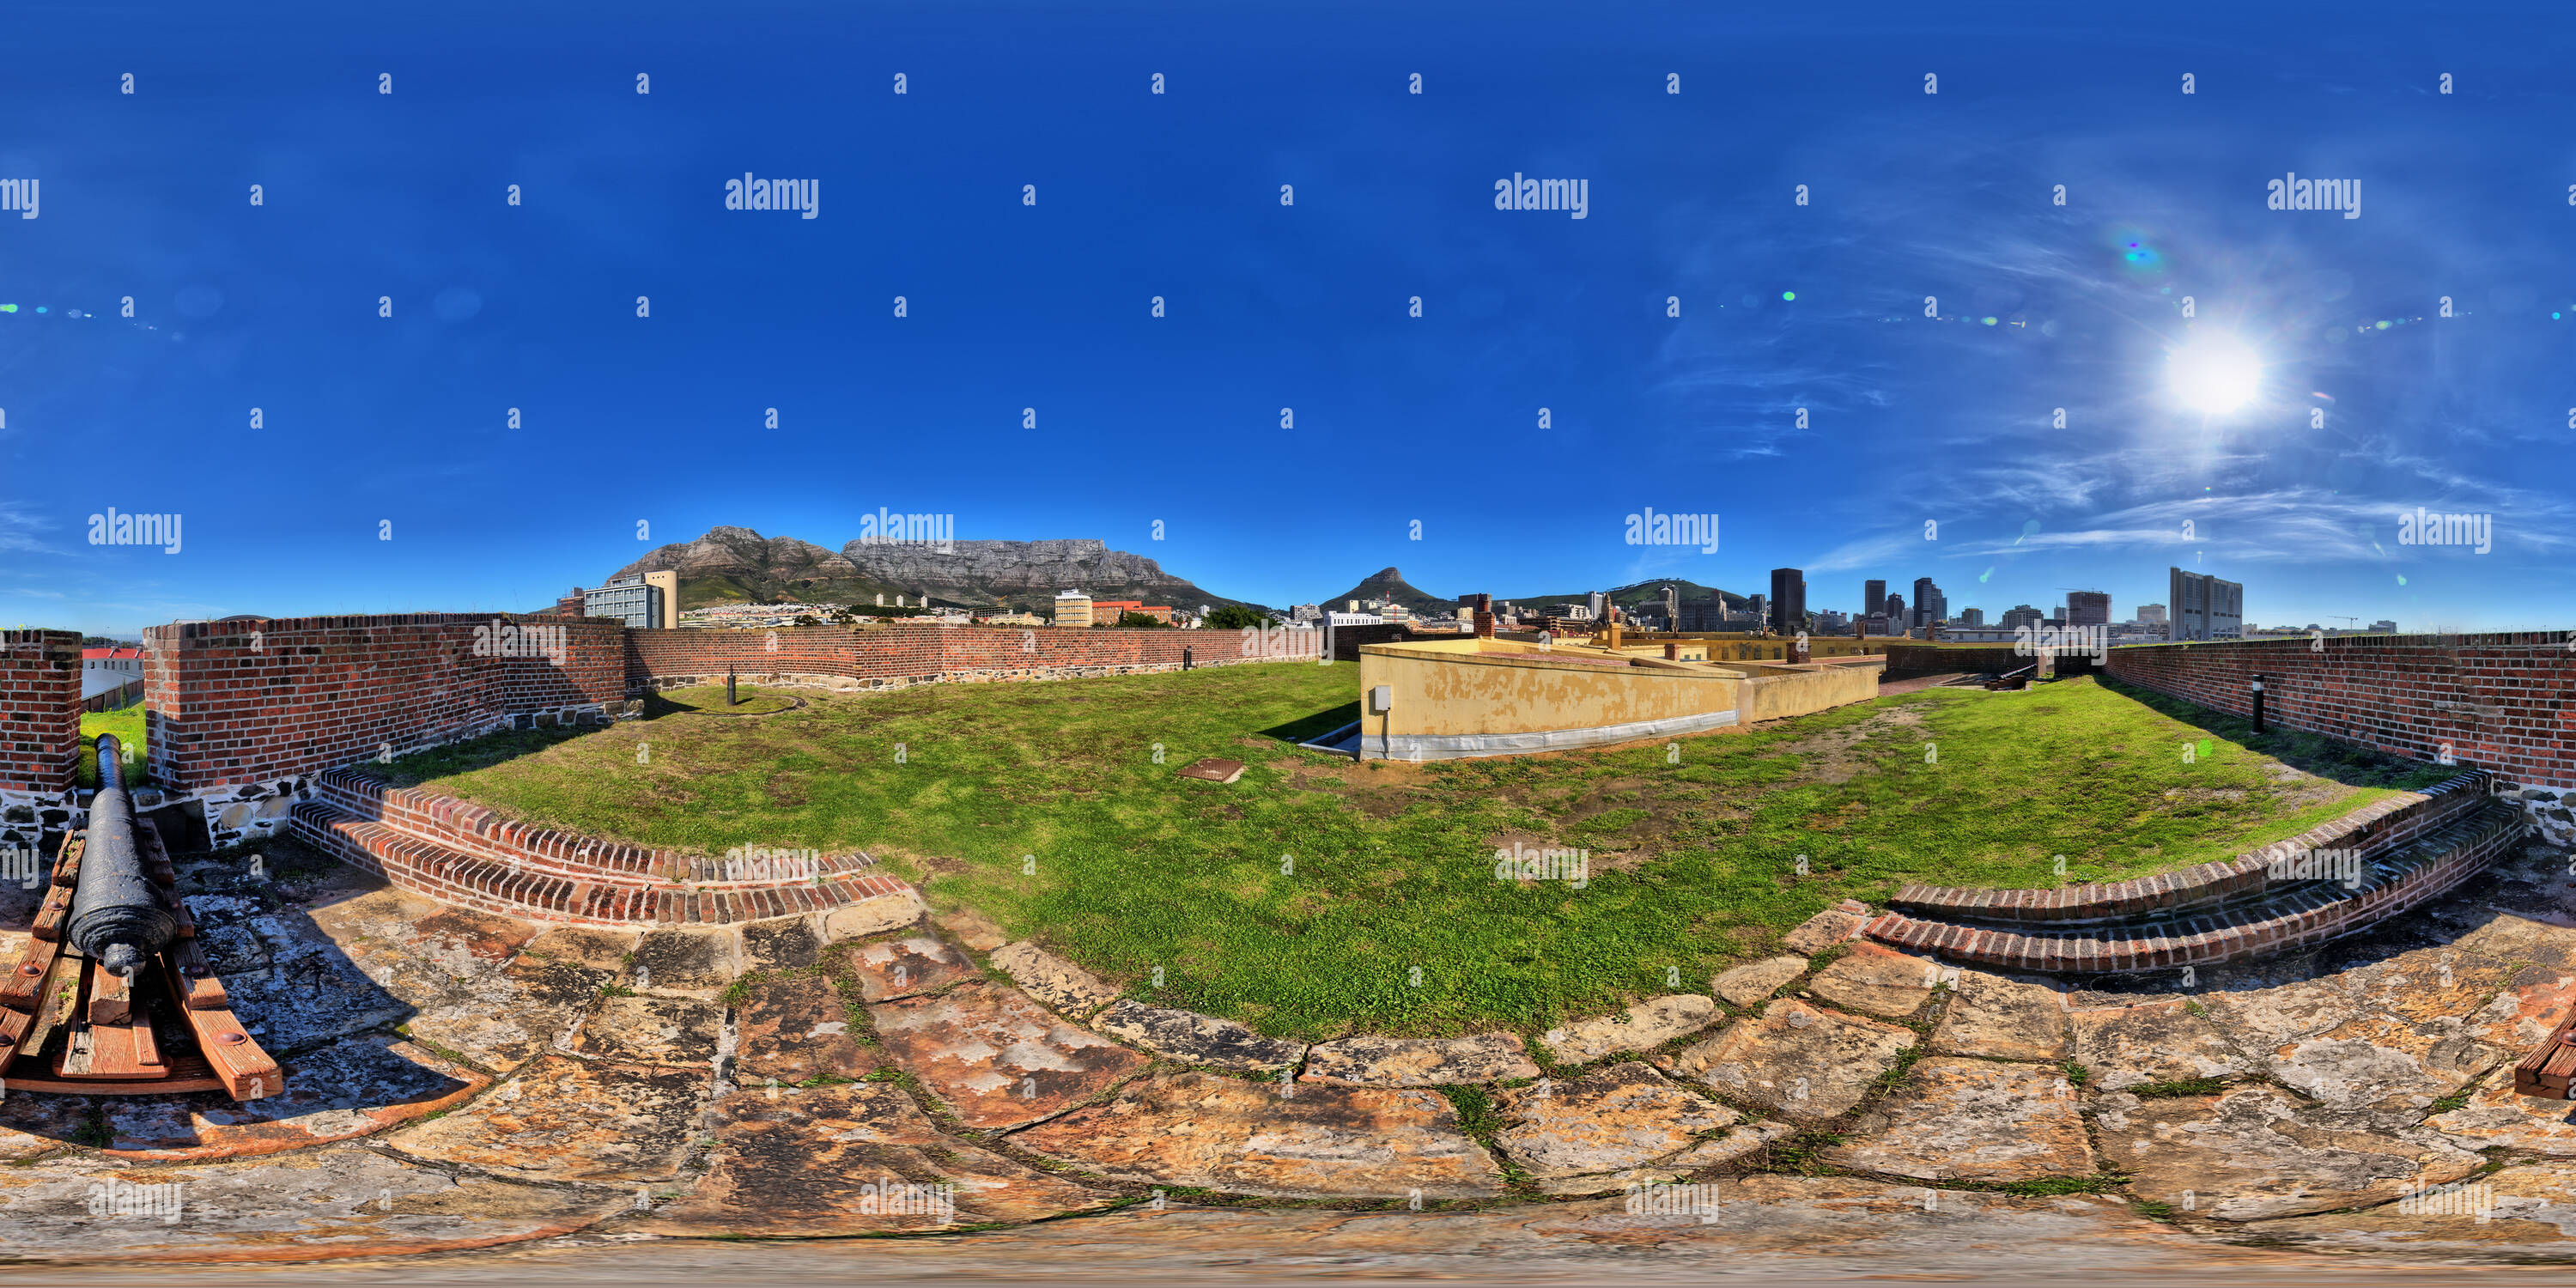 Vue panoramique à 360° de Château de Bonne Espérance, Cape Town, Afrique du Sud, le nord-est de la position des armes à feu